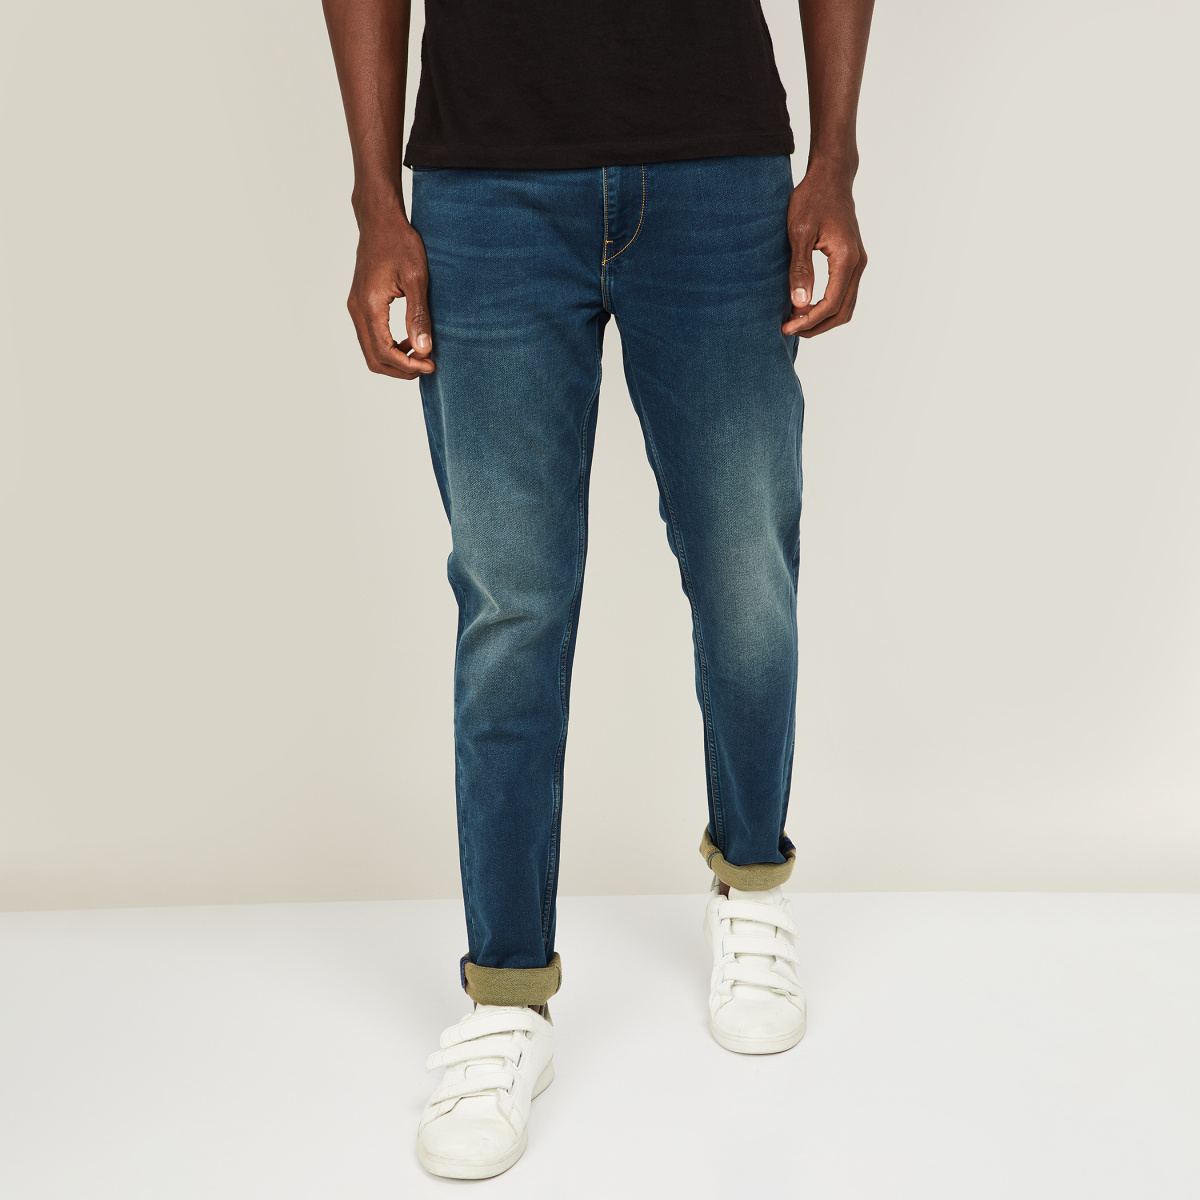 LEE Men Light-Washed Skinny Fit Jeans